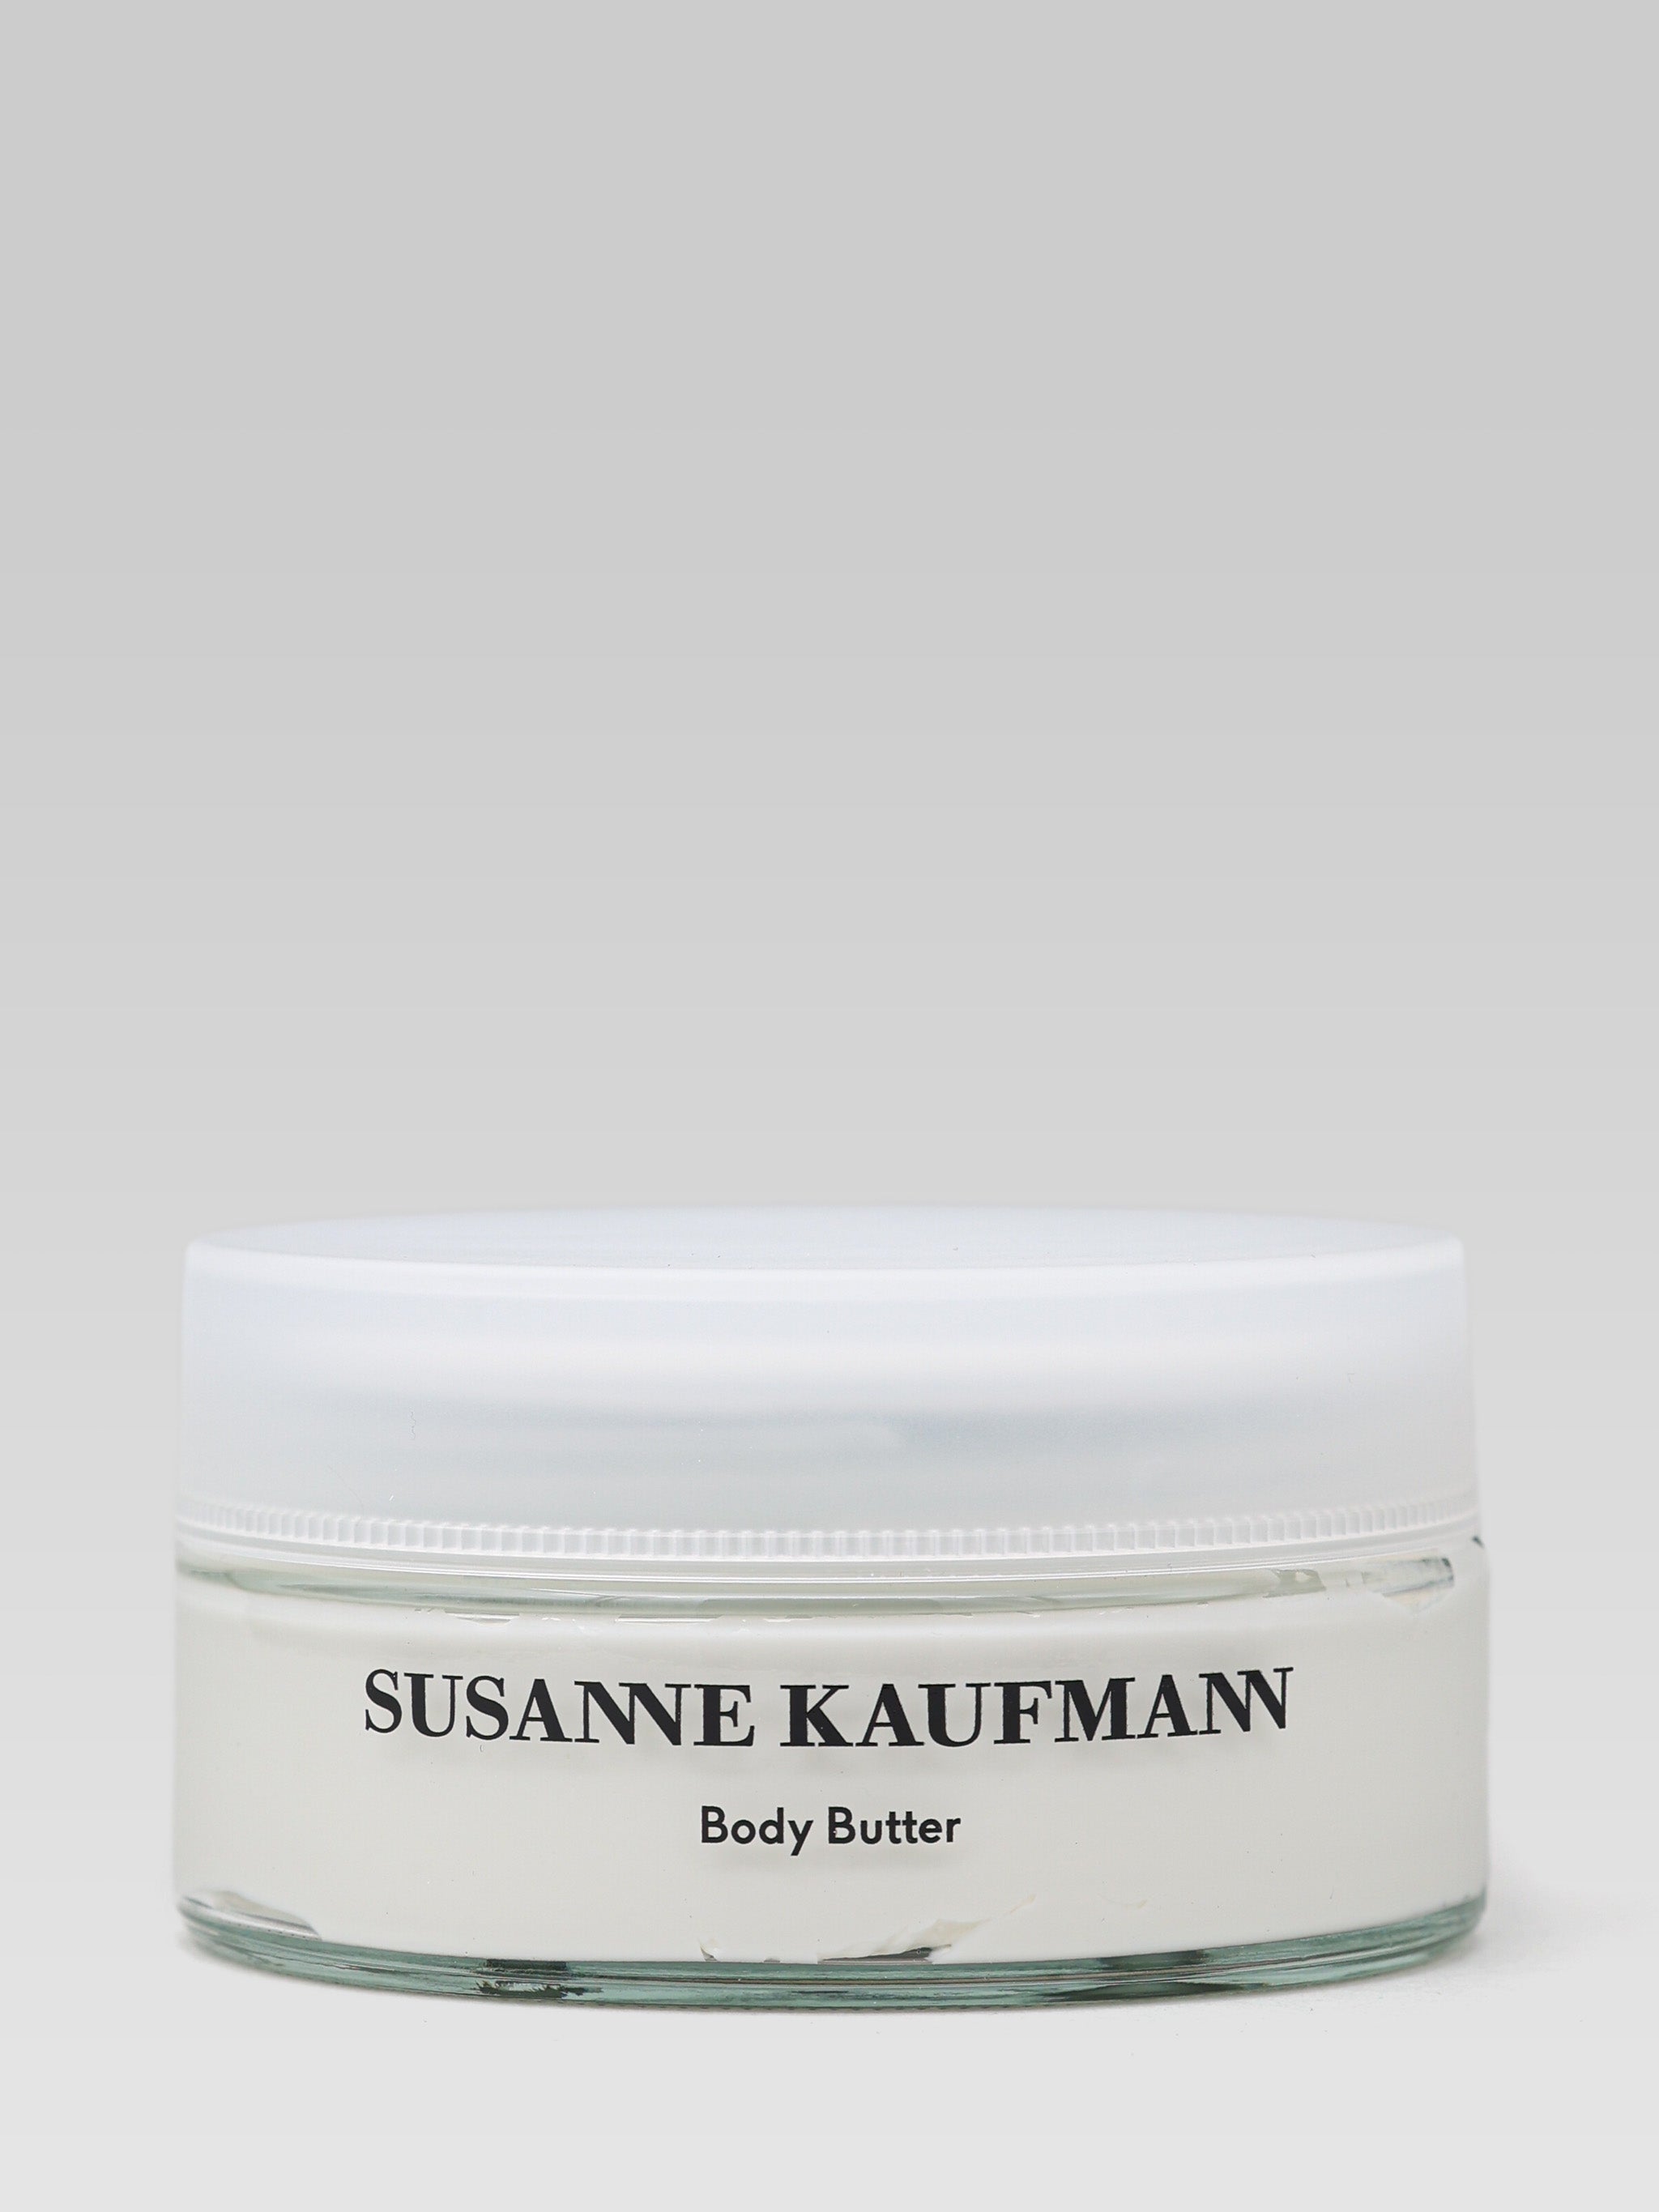 Susanne Kaufmann Body Butter product shot 